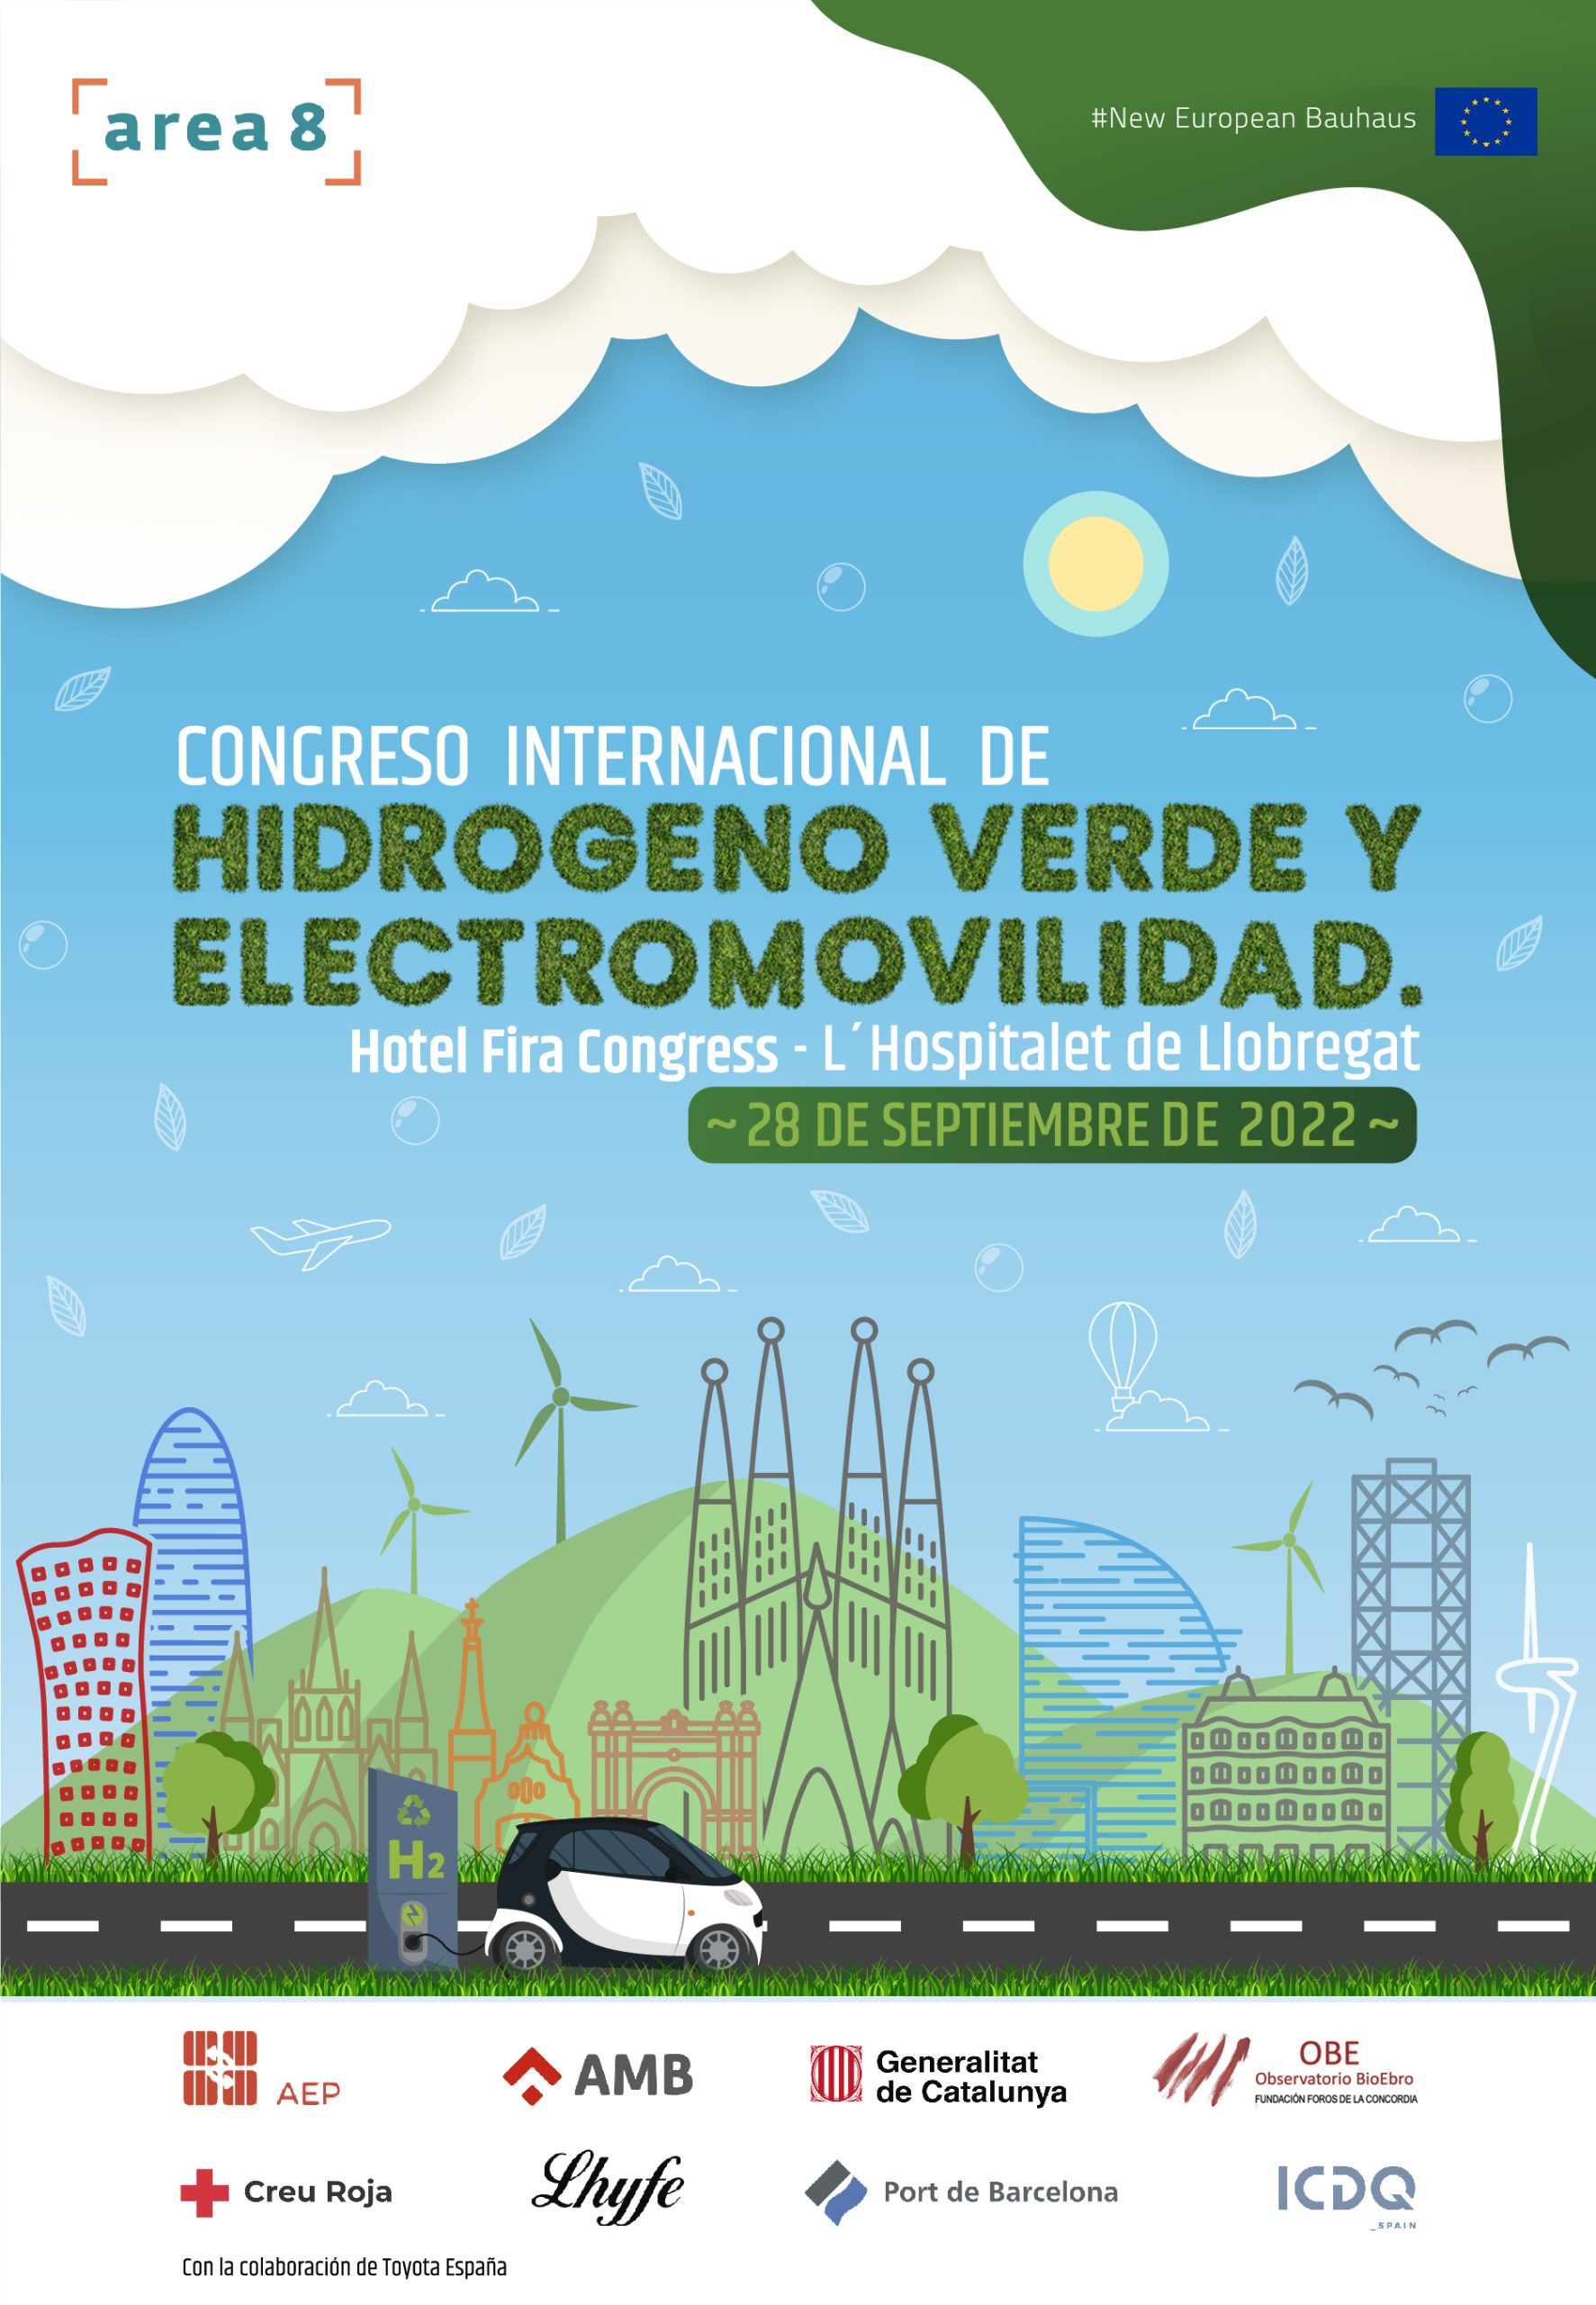 Congreso de H2 Verde y Electromovilidad